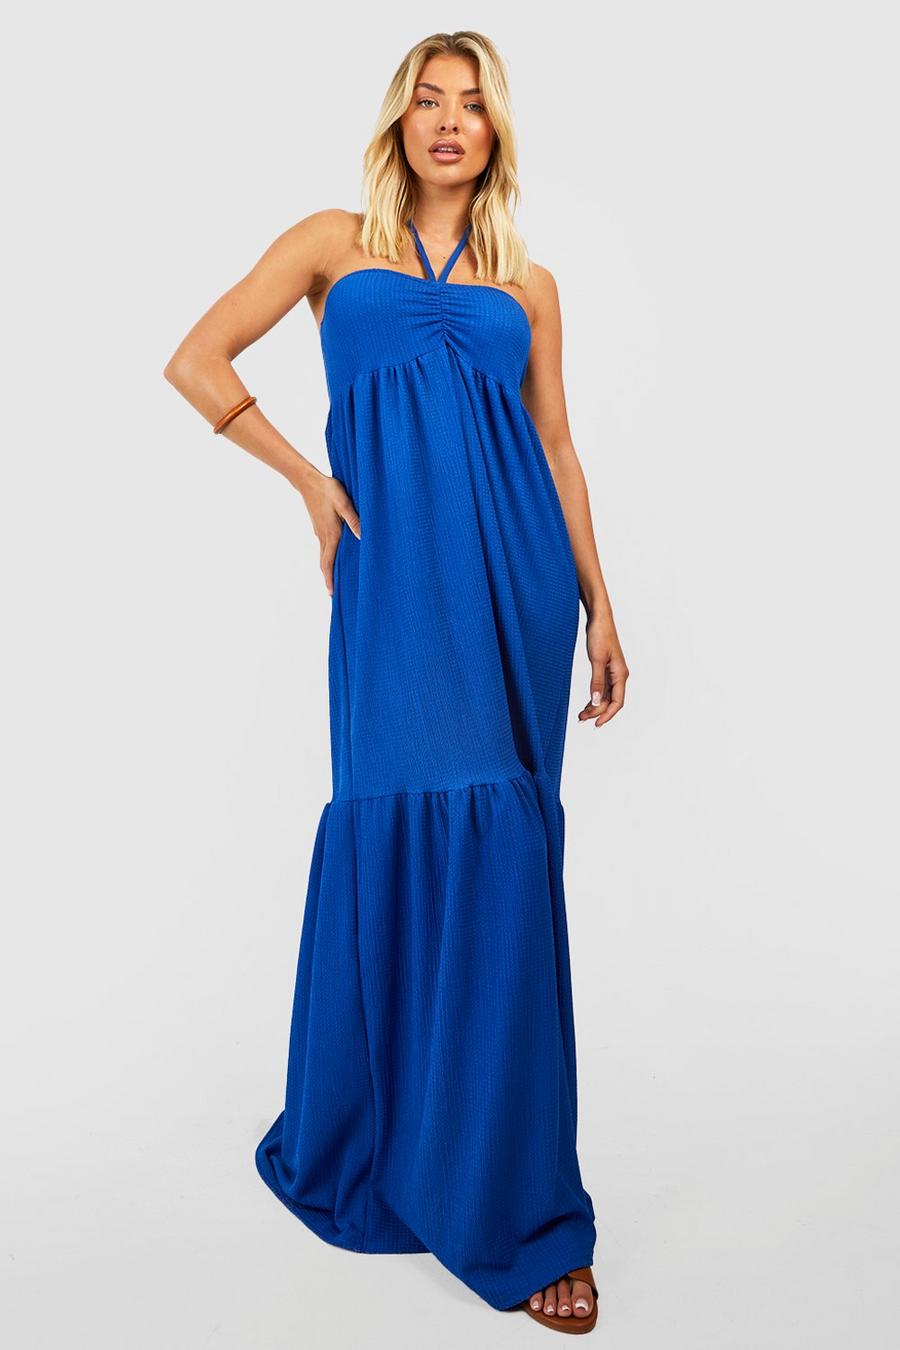 Cobalt blue Halter Textured Maxi Dress